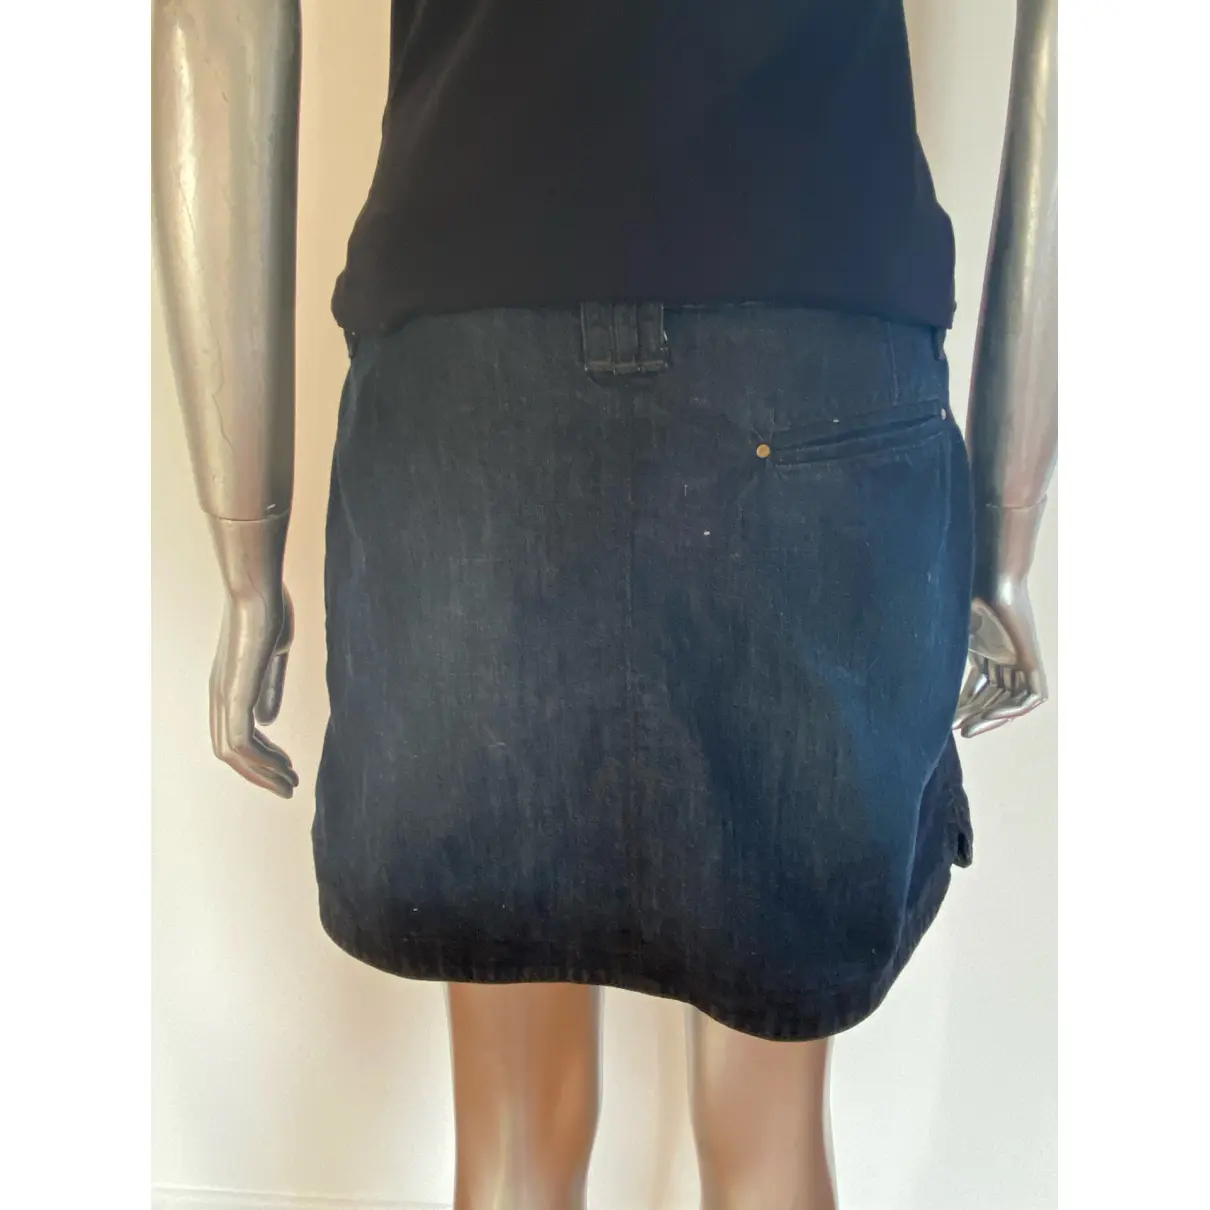 Buy Ikks Mini skirt online